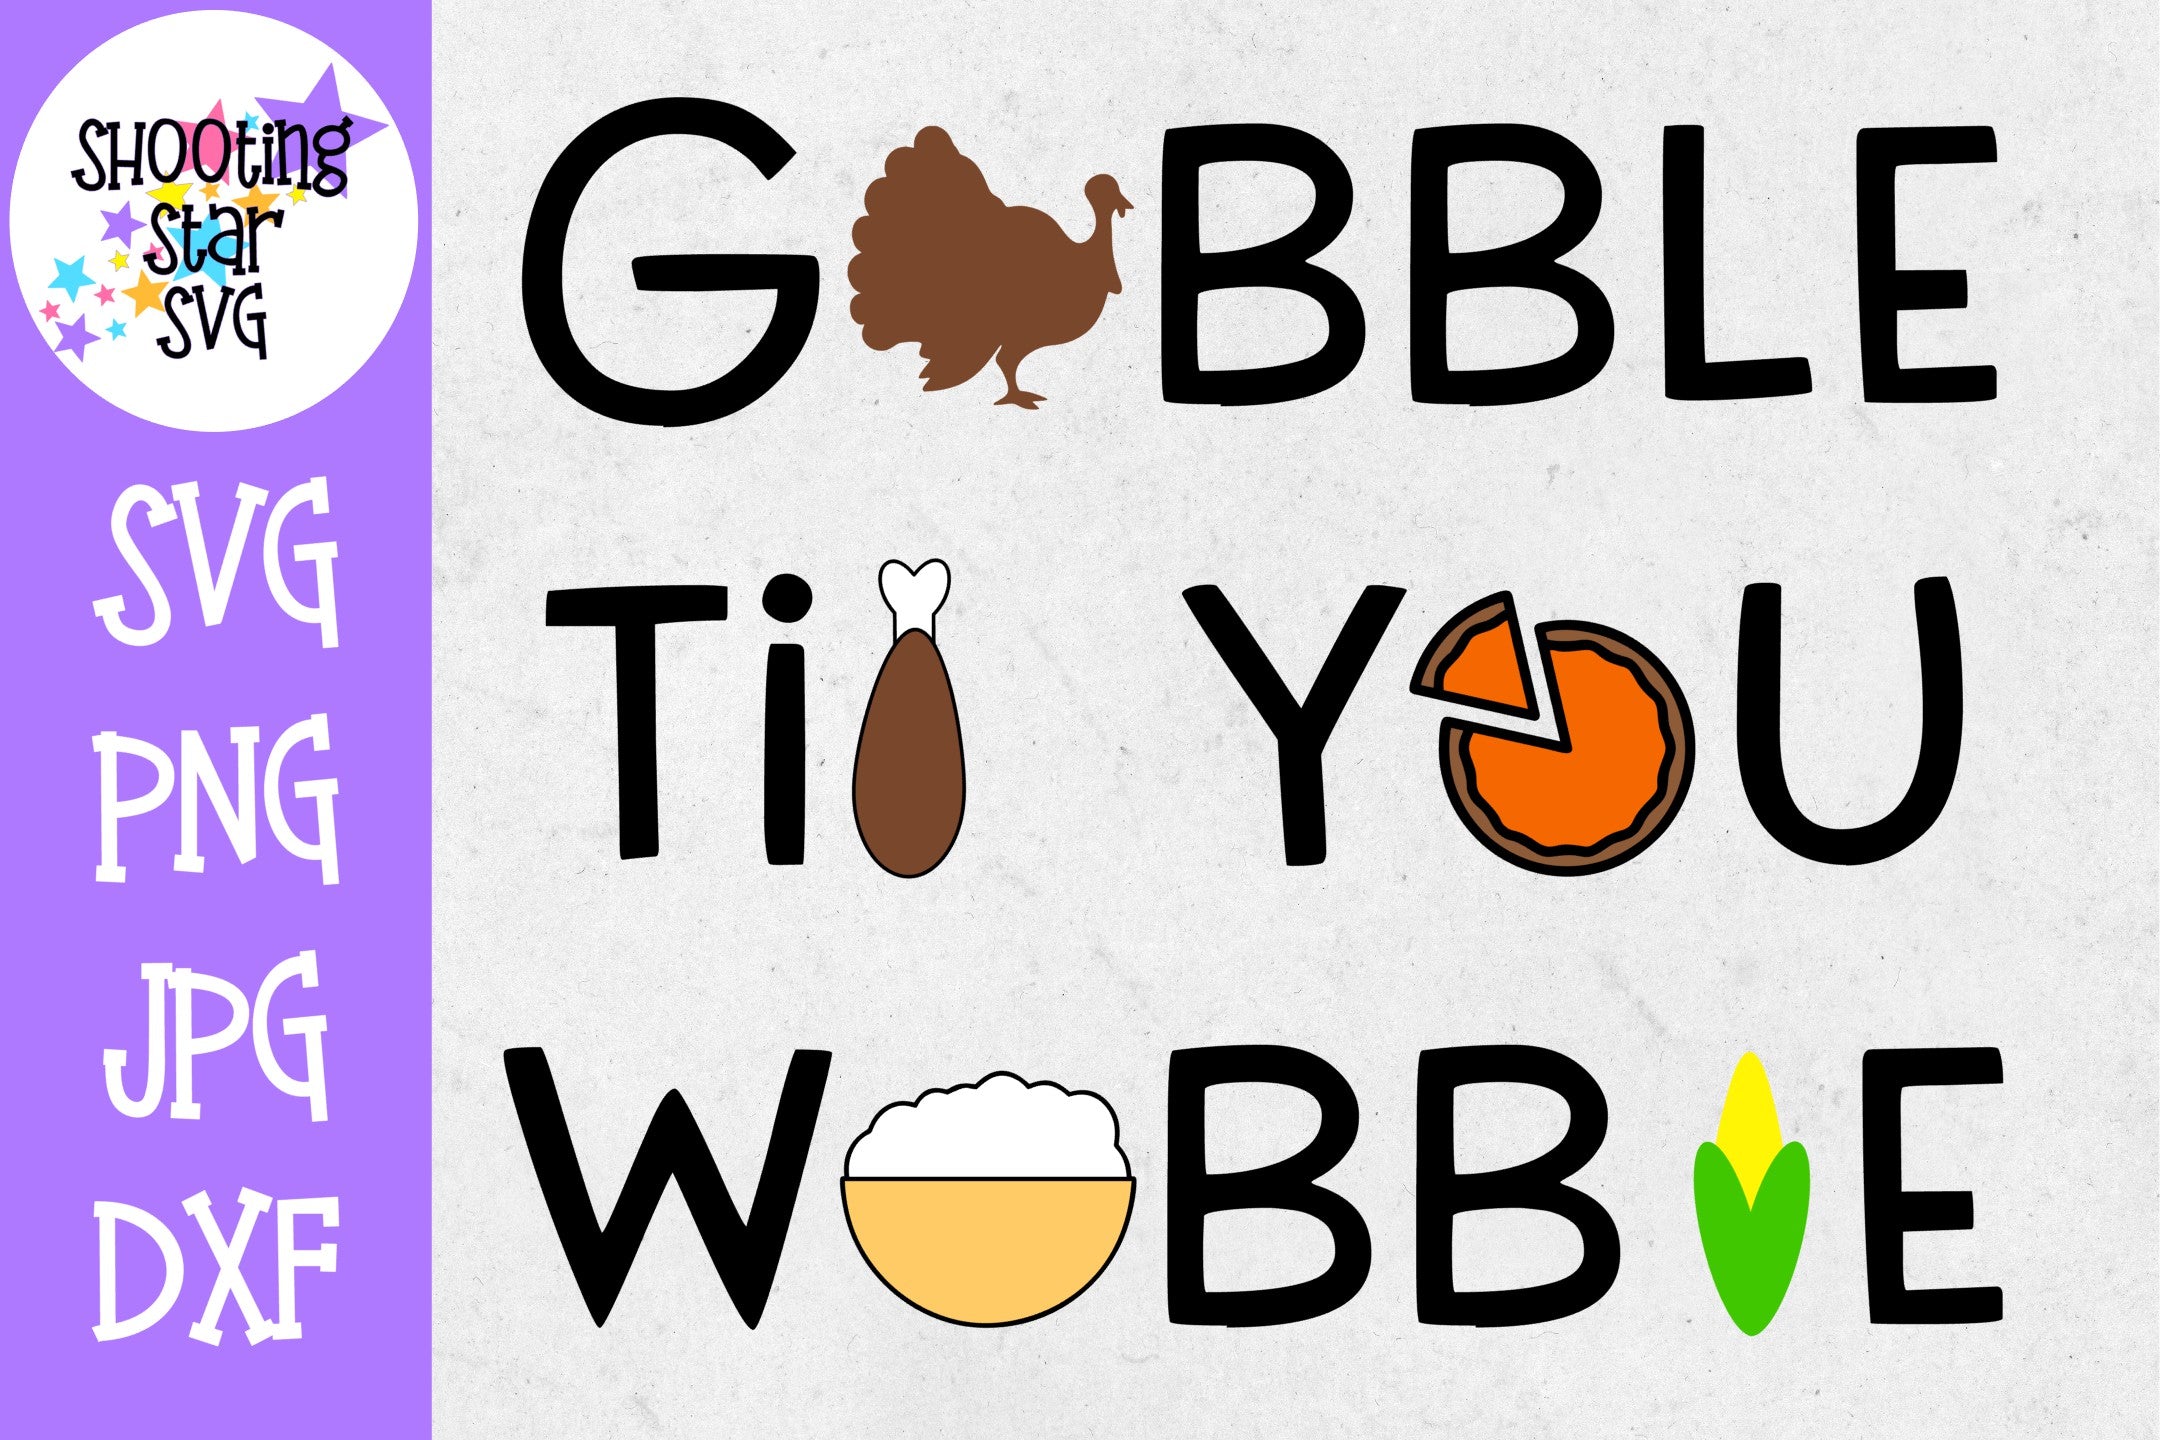 Gobble Til You Wobble SVG- Funny SVG - Thanksgiving SVG